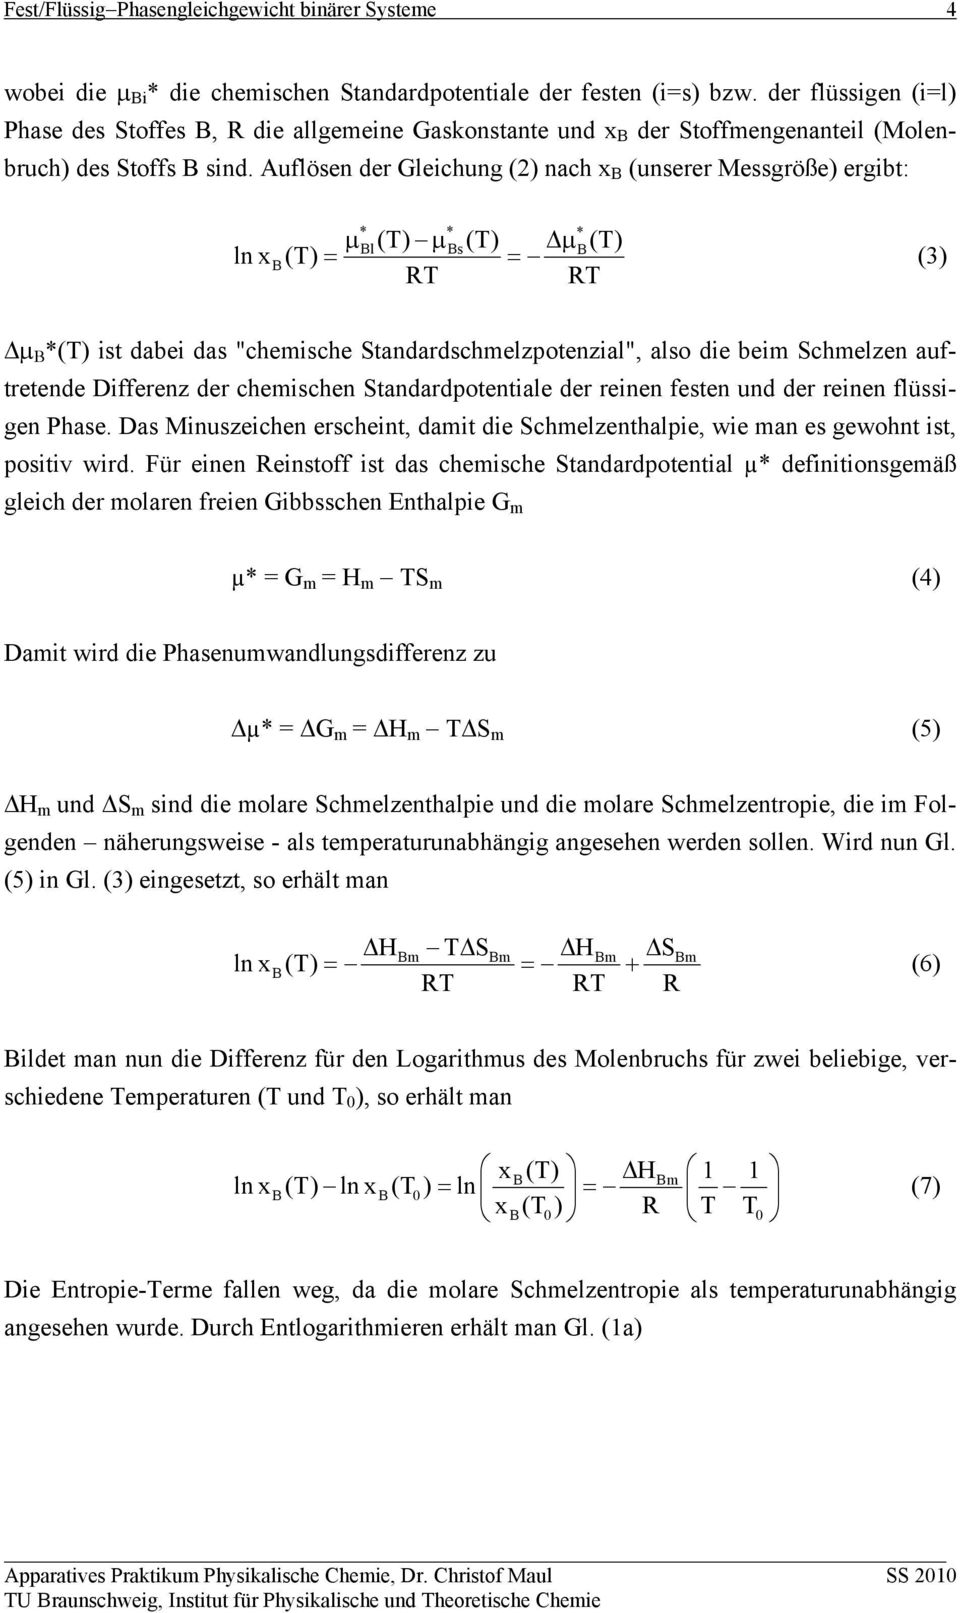 Auflösen der Gleichung (2) nach x (unserer Messgröße) ergibt: * * * μl(t) μs (T) Δμ(T) ln x (T) = = (3) RT RT Δμ Β *(T) ist dabei das "chemische Standardschmelzpotenzial", also die beim Schmelzen